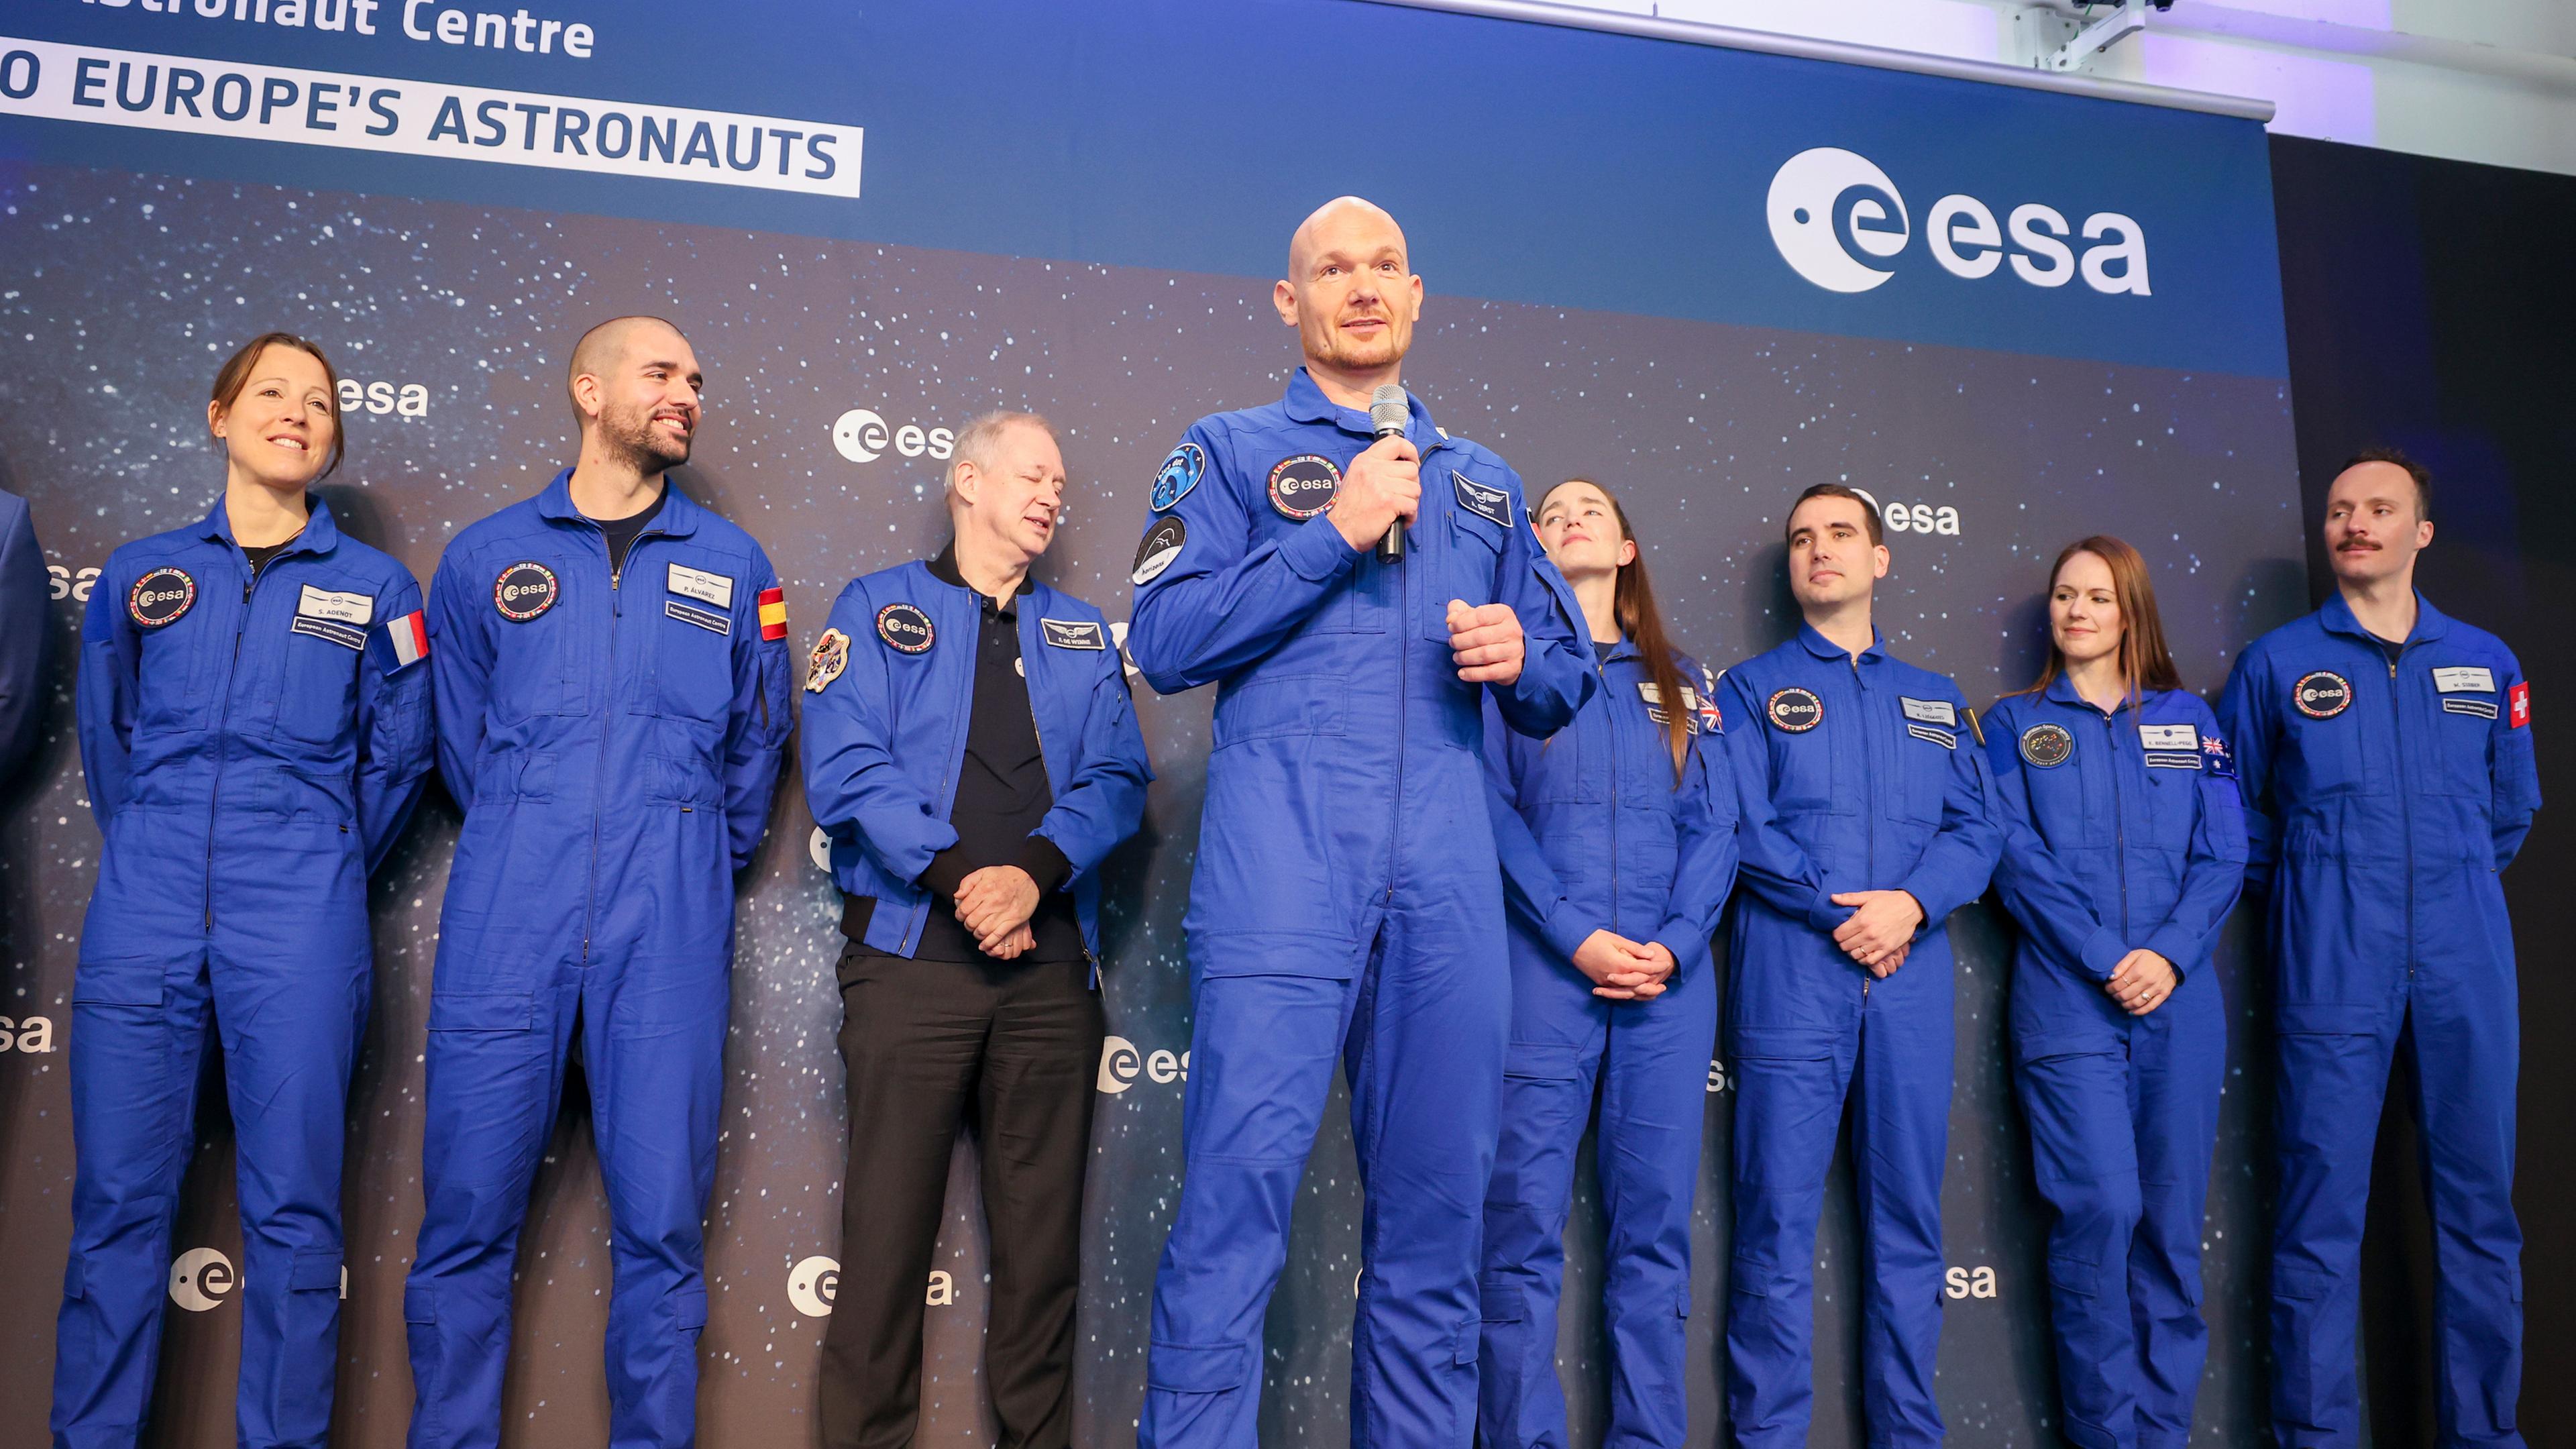 Alexander Gerst, Astronaut der Europäischen Weltraumorganisation ESA, hält eine Rede während einer Abschlussfeier im Europäischen Astronautenzentrum in Köln, am 22.04.2024.